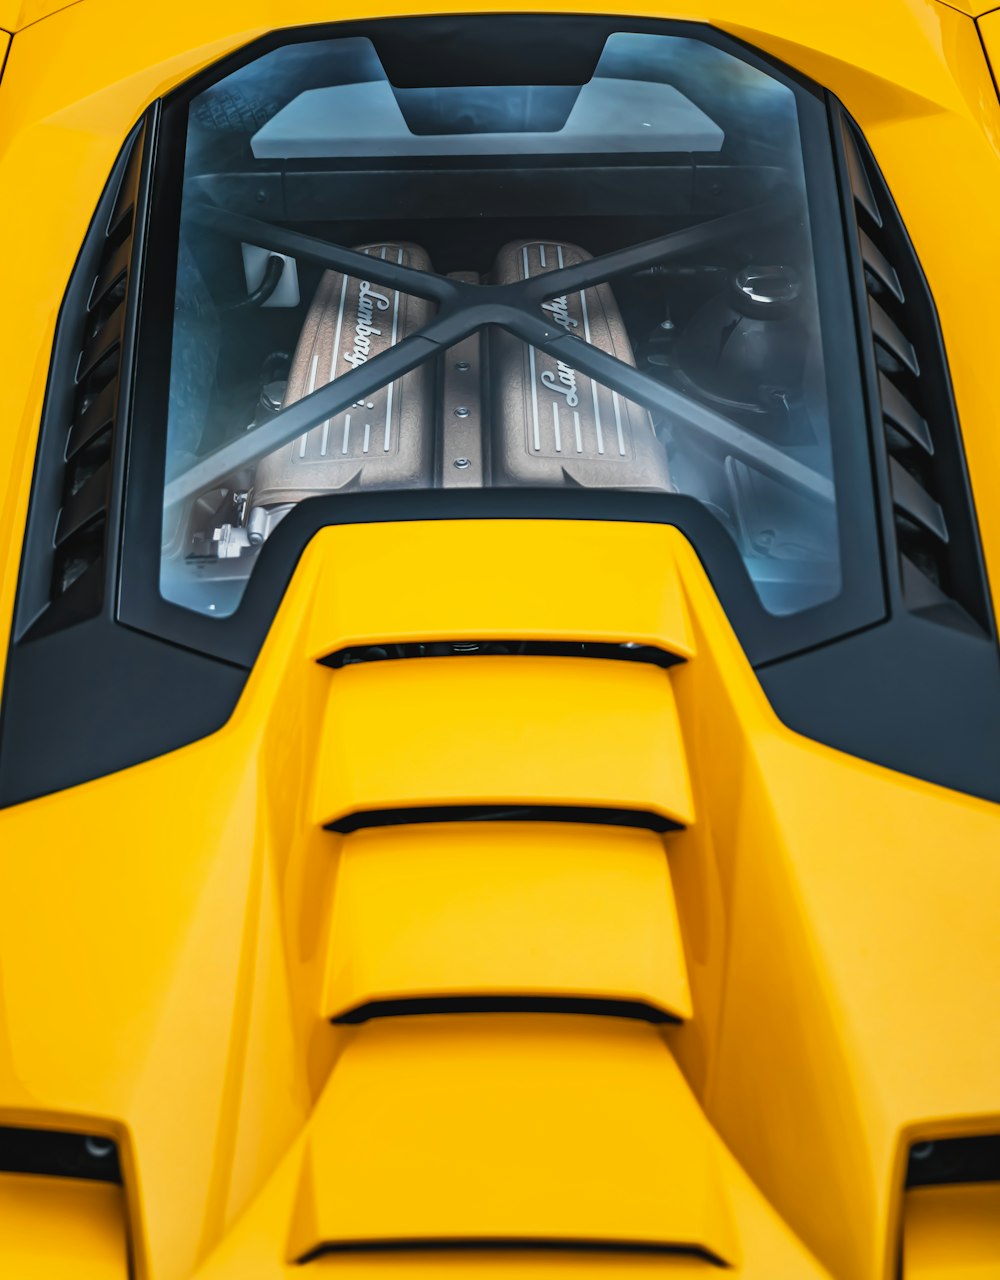 Tren amarillo y negro durante el día